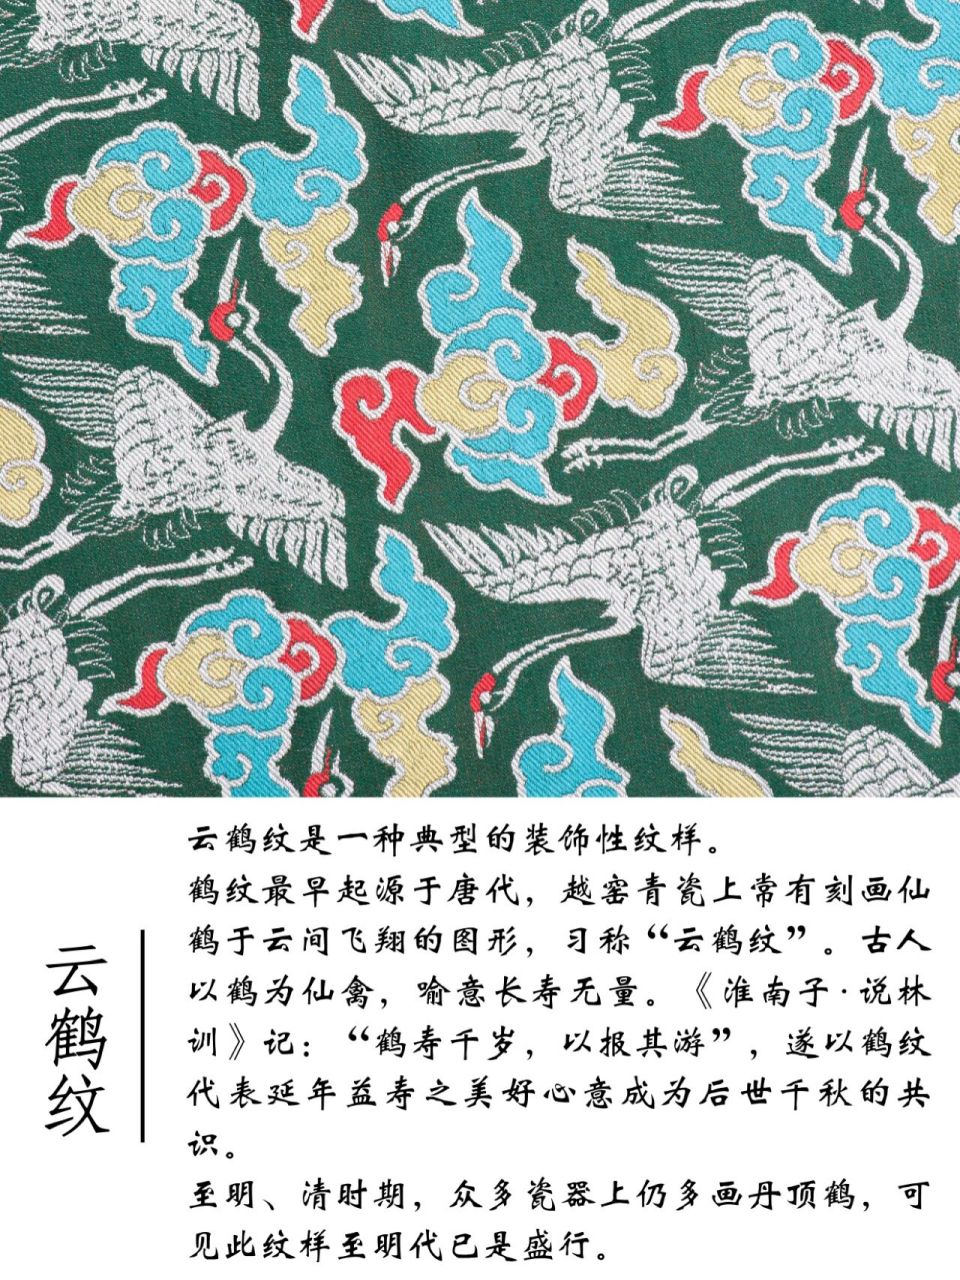 蜀锦花纹 纹样图片